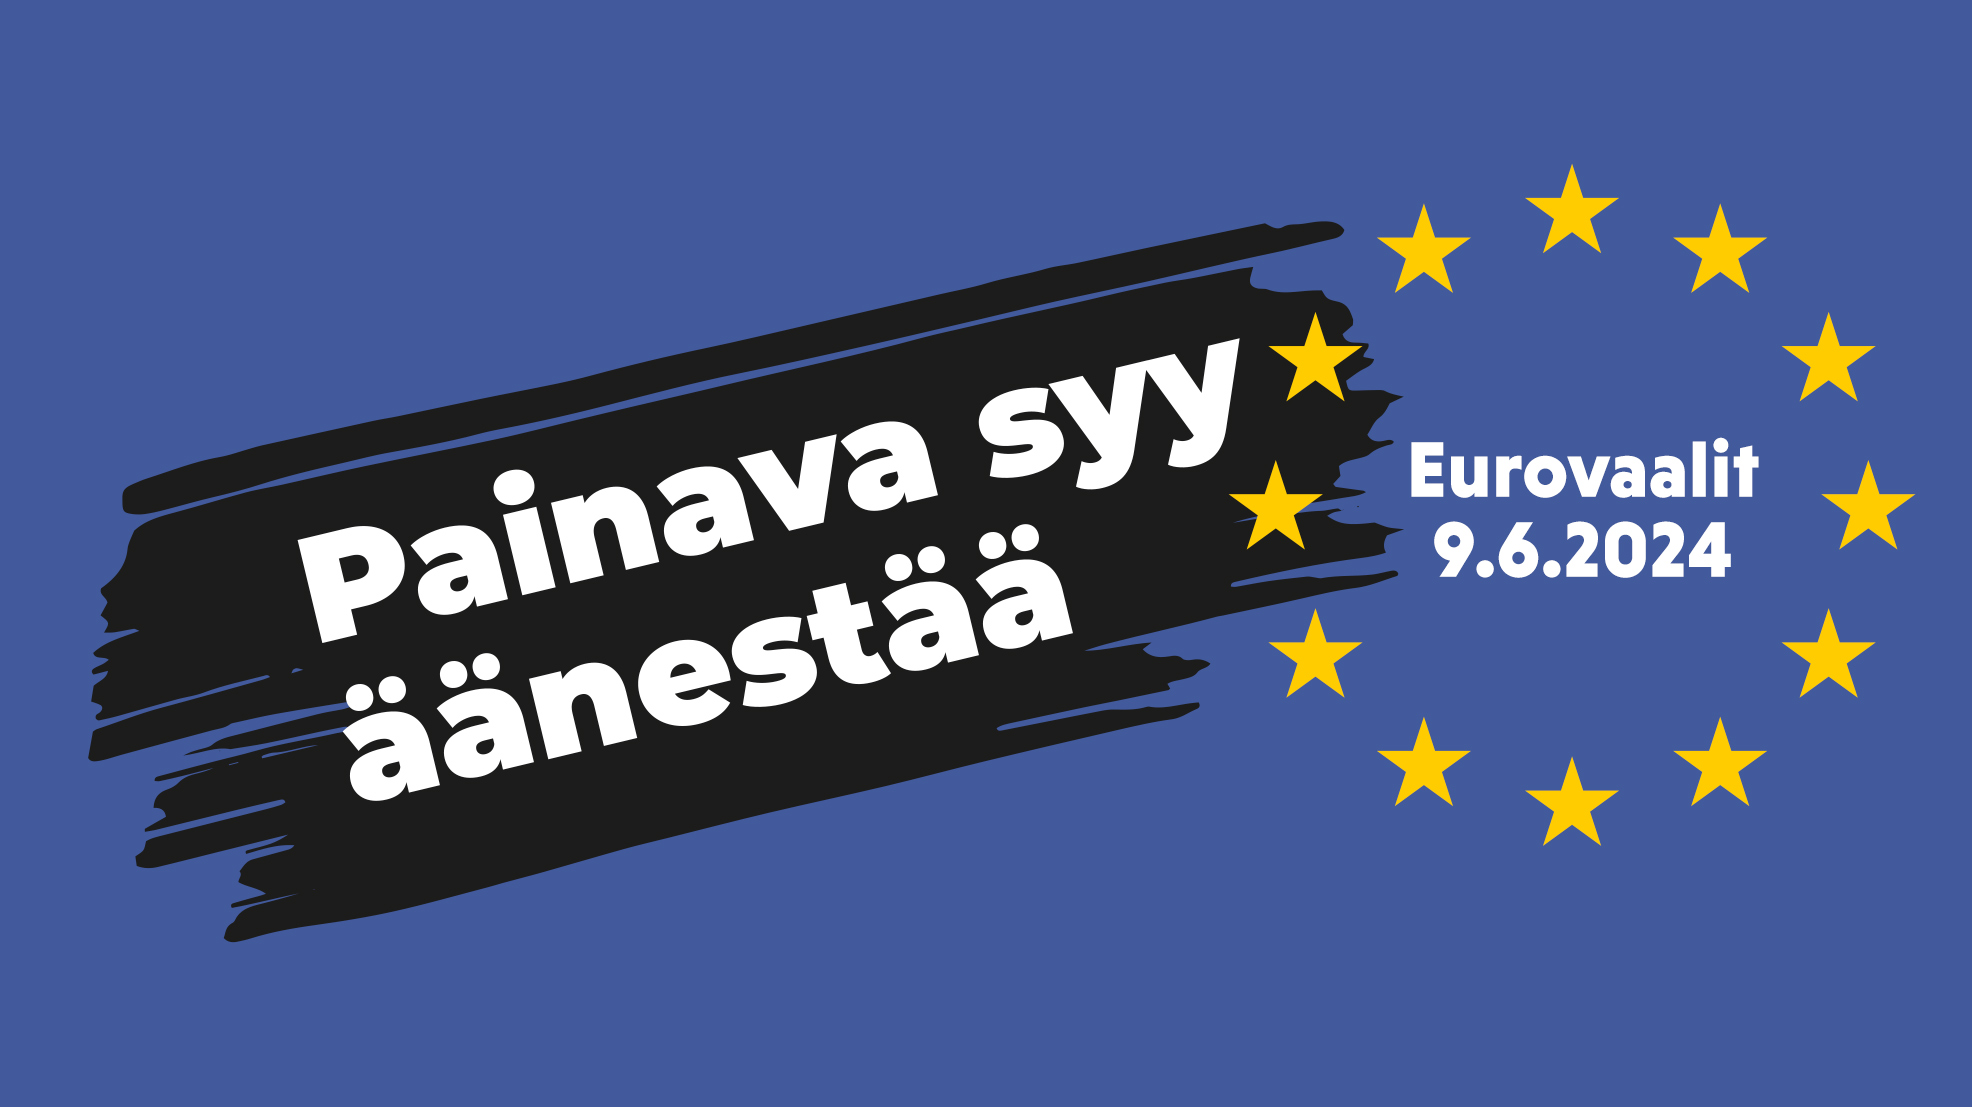 Sinisellä pohjalla keltaiset tähdet ympyrässä ja teksti "Painava syy äänestää - Eurovaalit 9.6.2024".